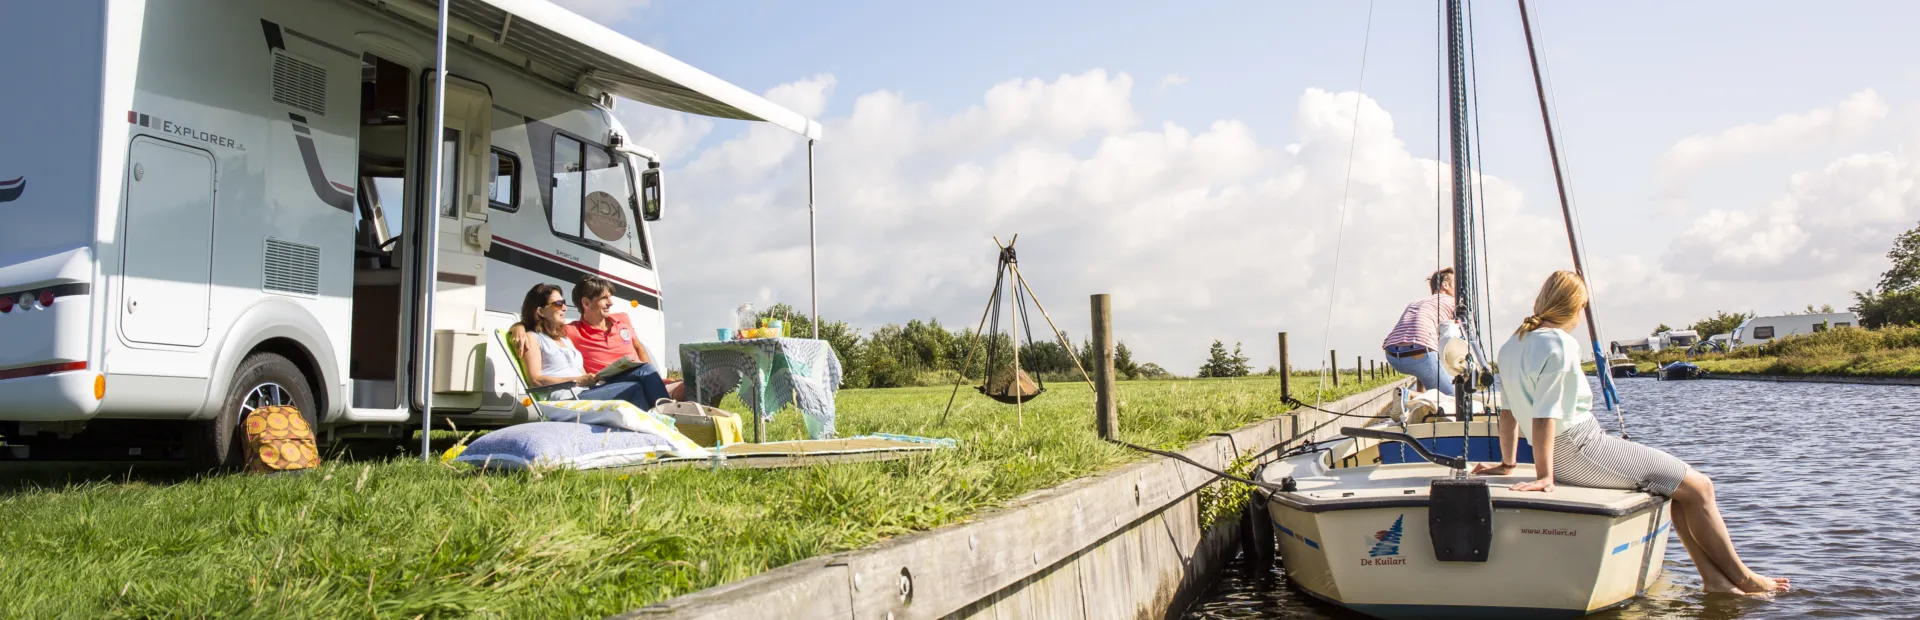 Kuilart vakantiepark Friesland kamperen aan het water zeilen